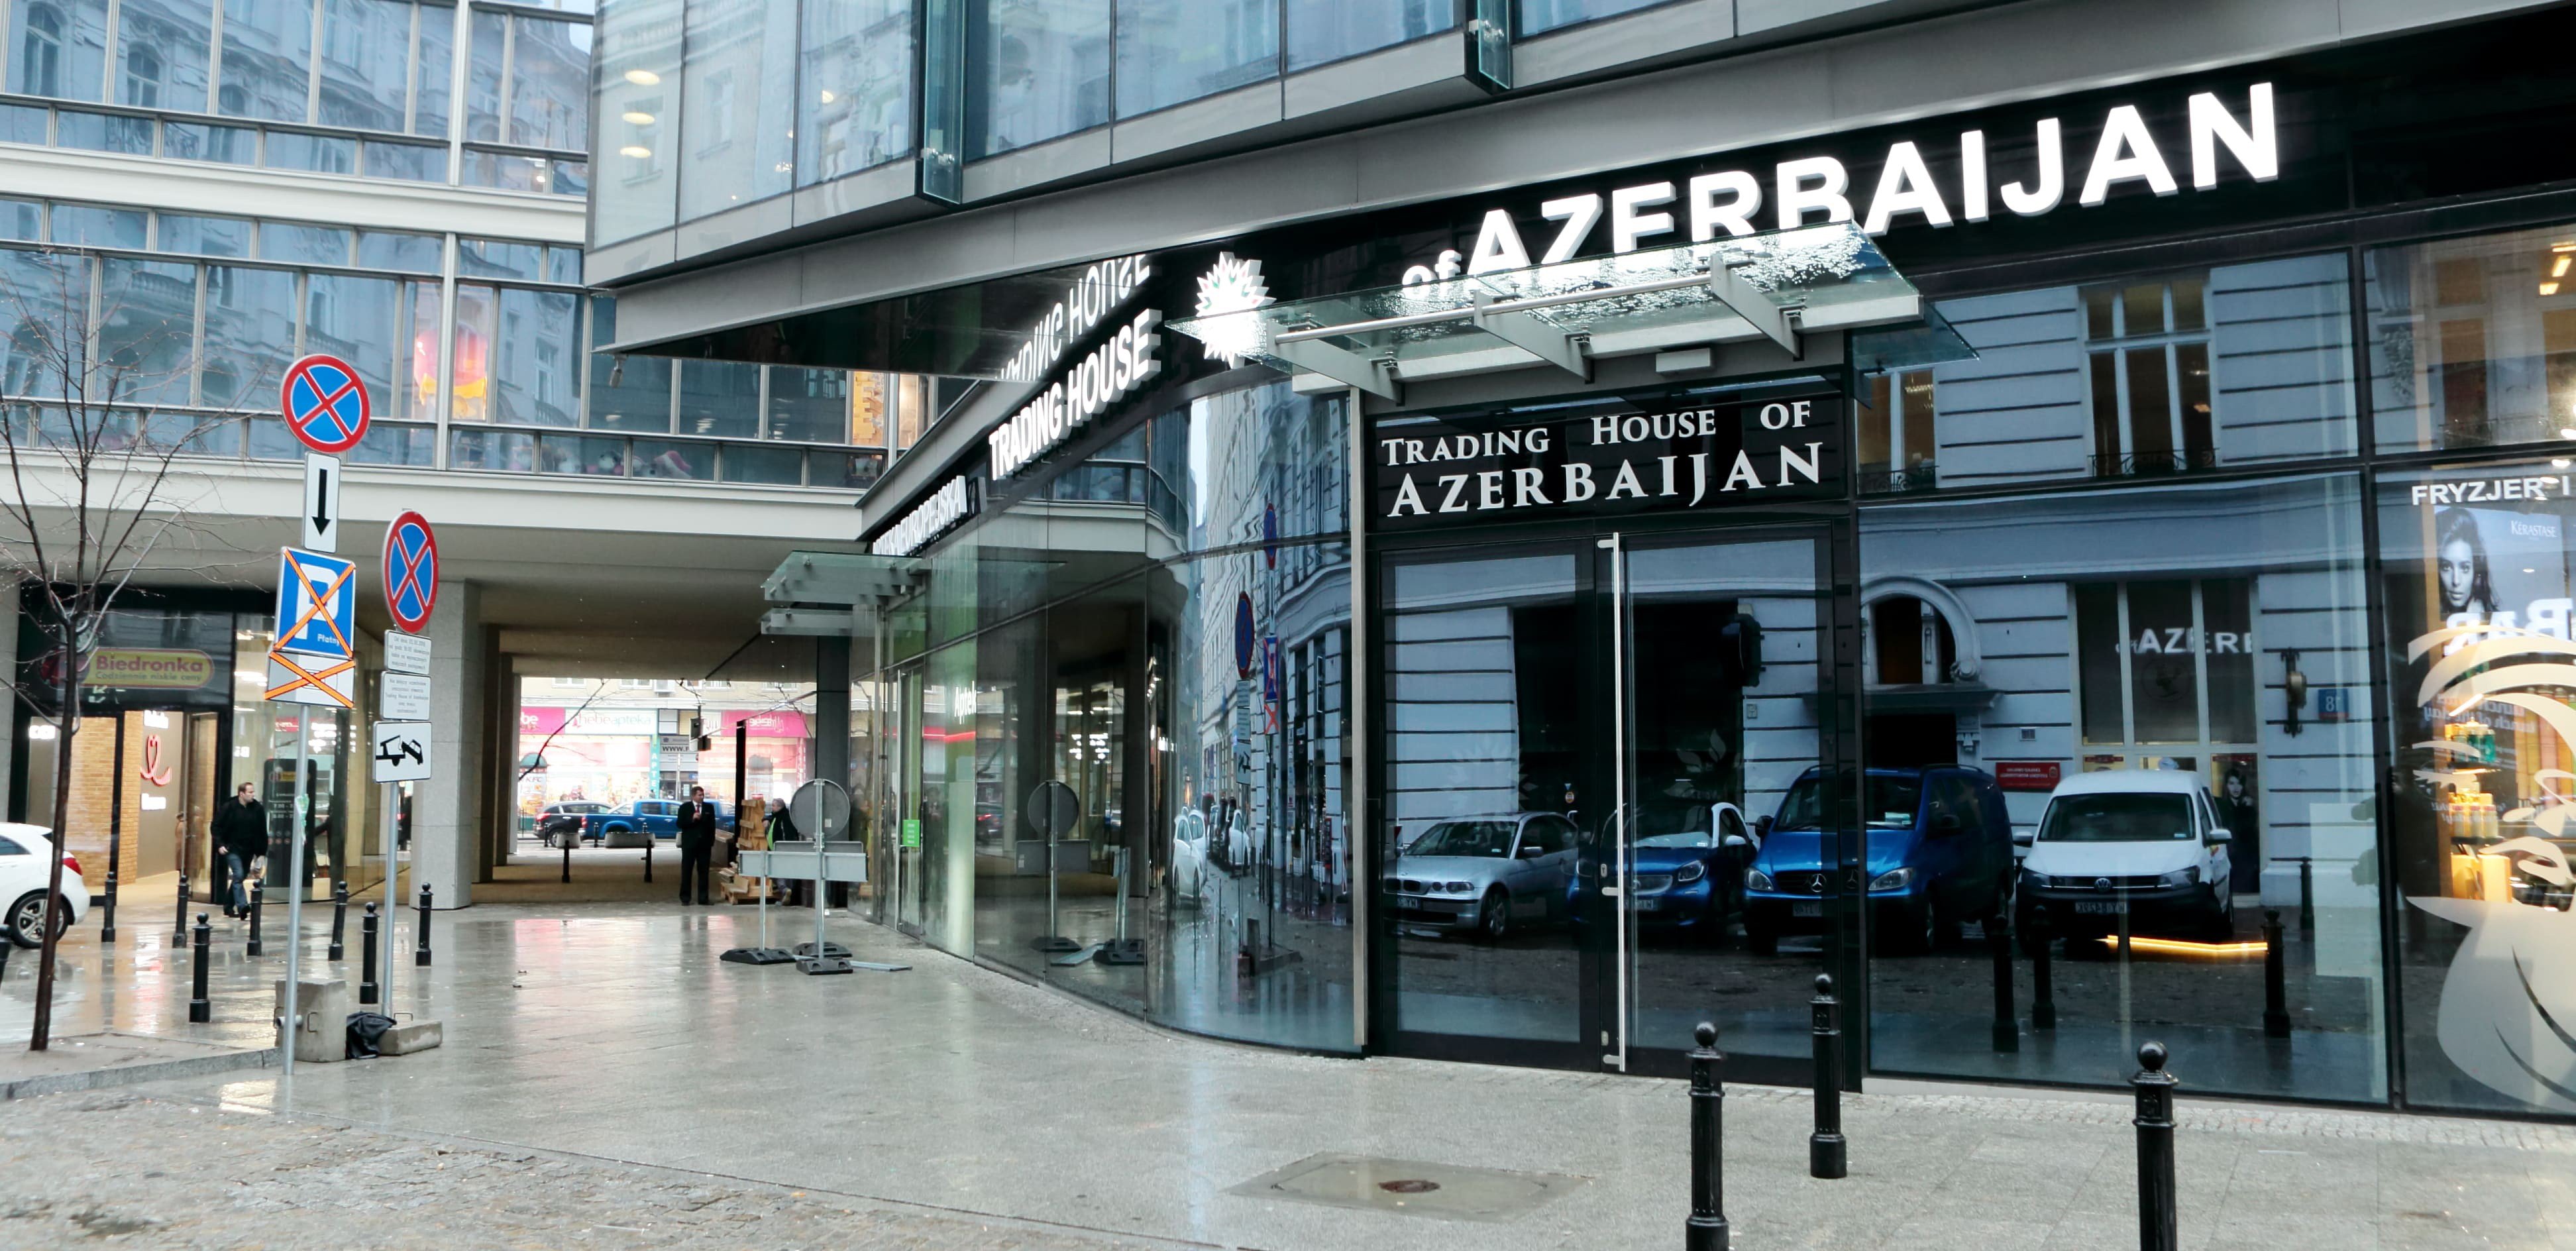 Bu il xaricdə daha 8 Azərbaycan evinin açılması planlaşdırılır